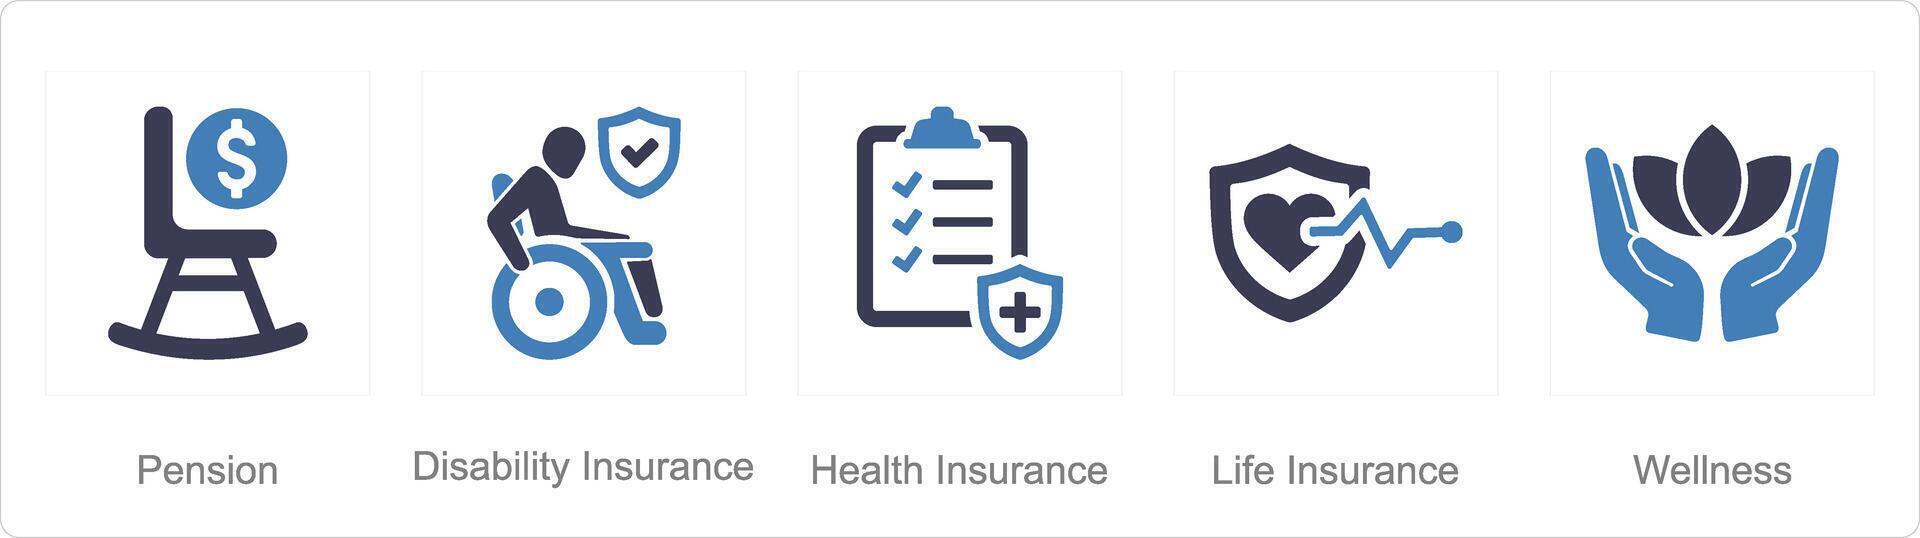 uma conjunto do 5 empregado benefícios ícones Como pensão, incapacidade seguro, saúde seguro vetor